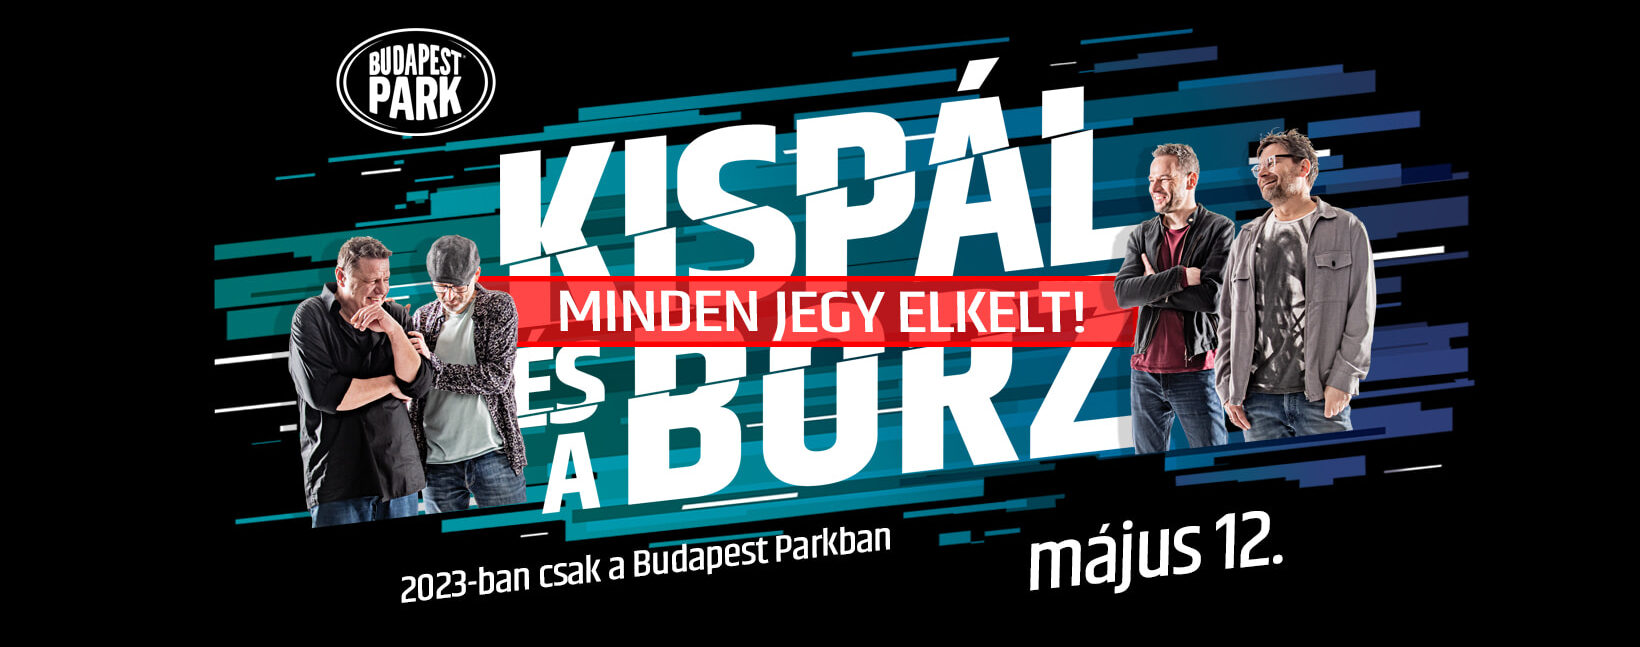 Kispál és a borz koncert 2023, Budapest Park